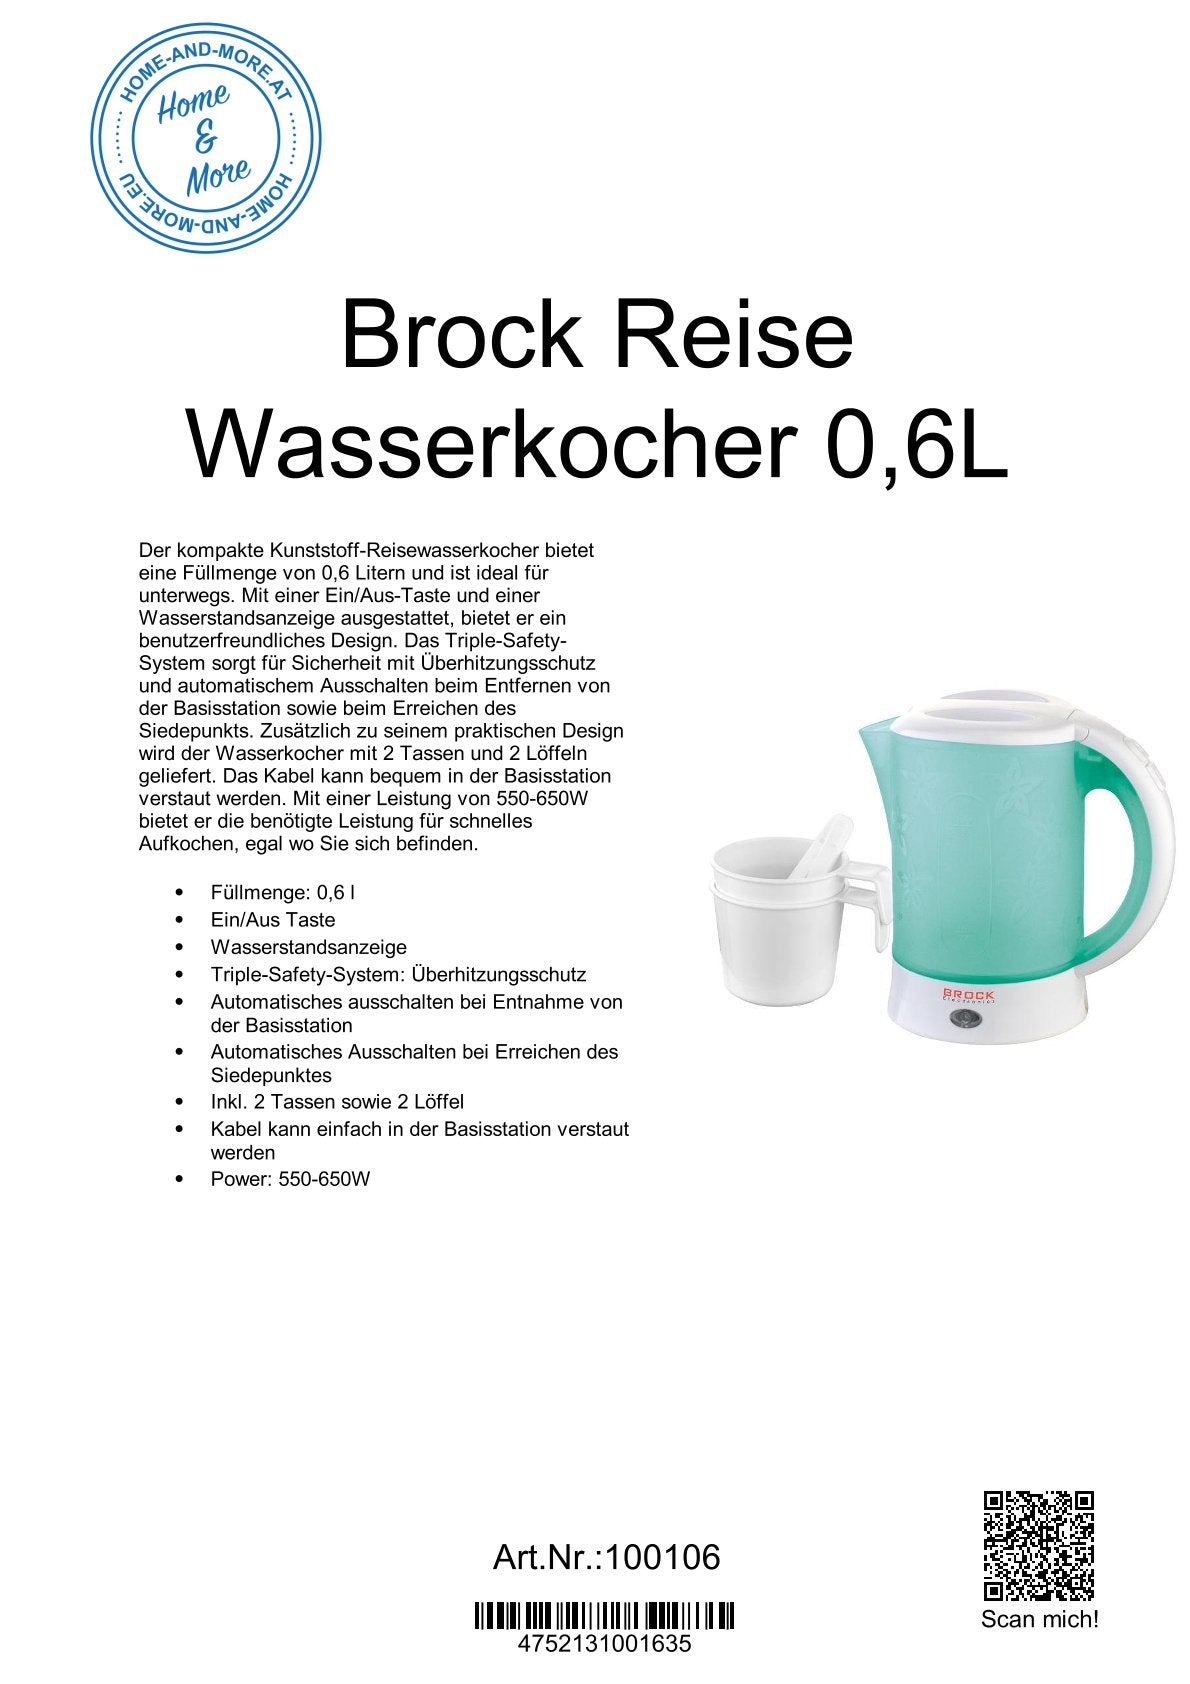 Brock Reise Wasserkocher 0,6L WK0902GR